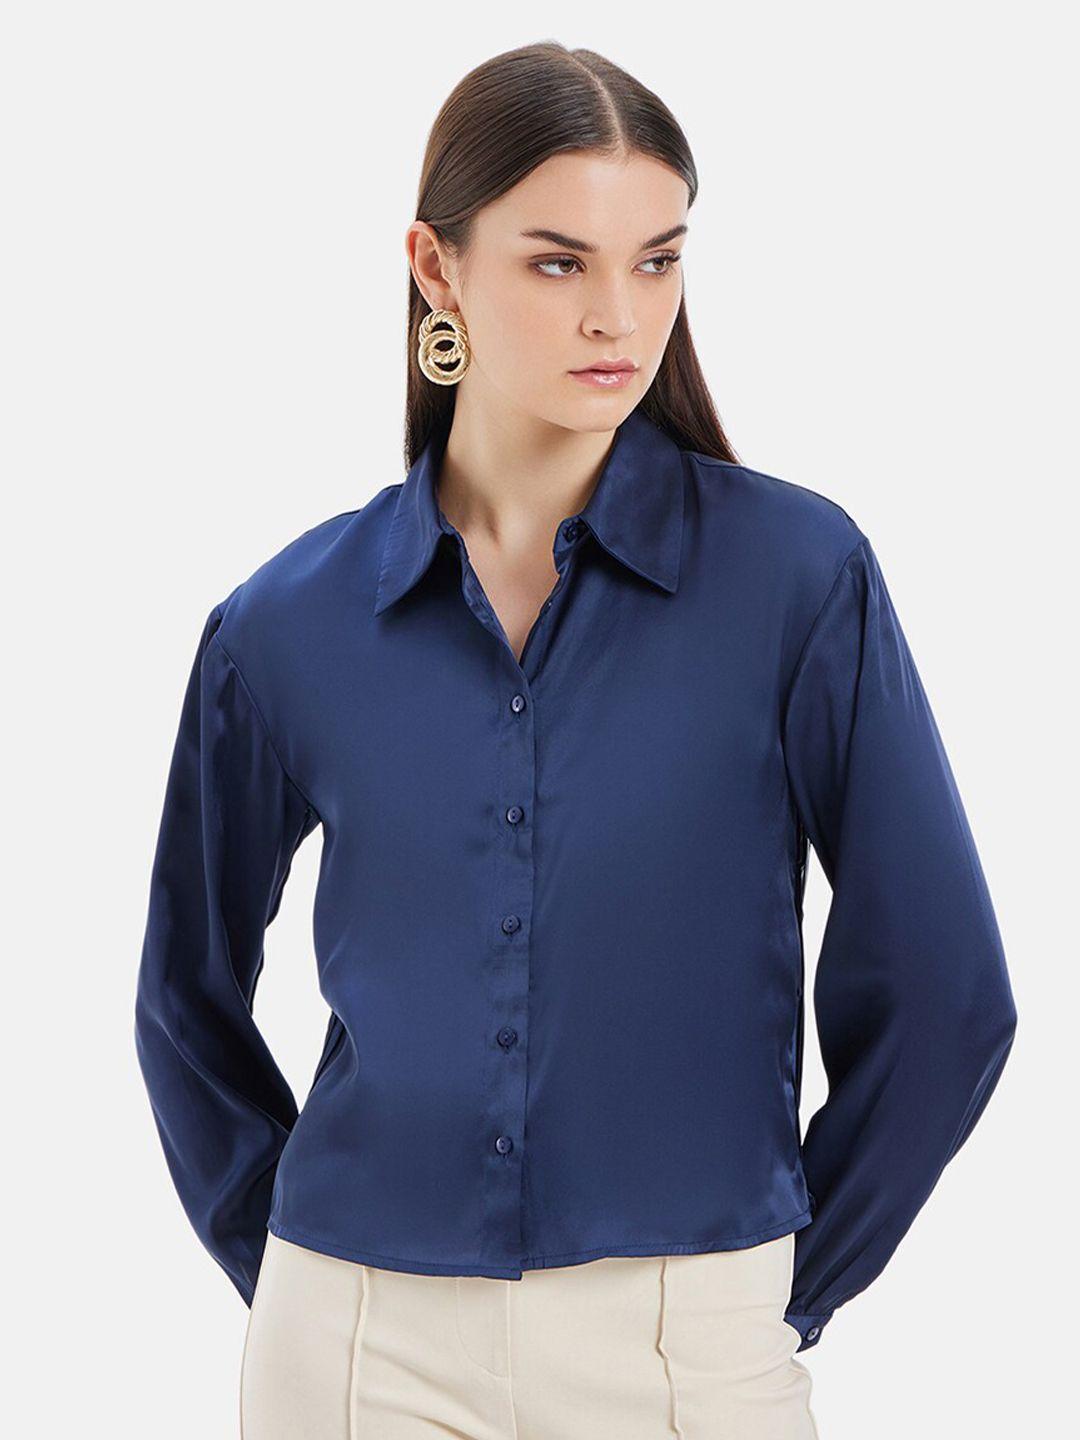 kazo women comfort opaque formal shirt